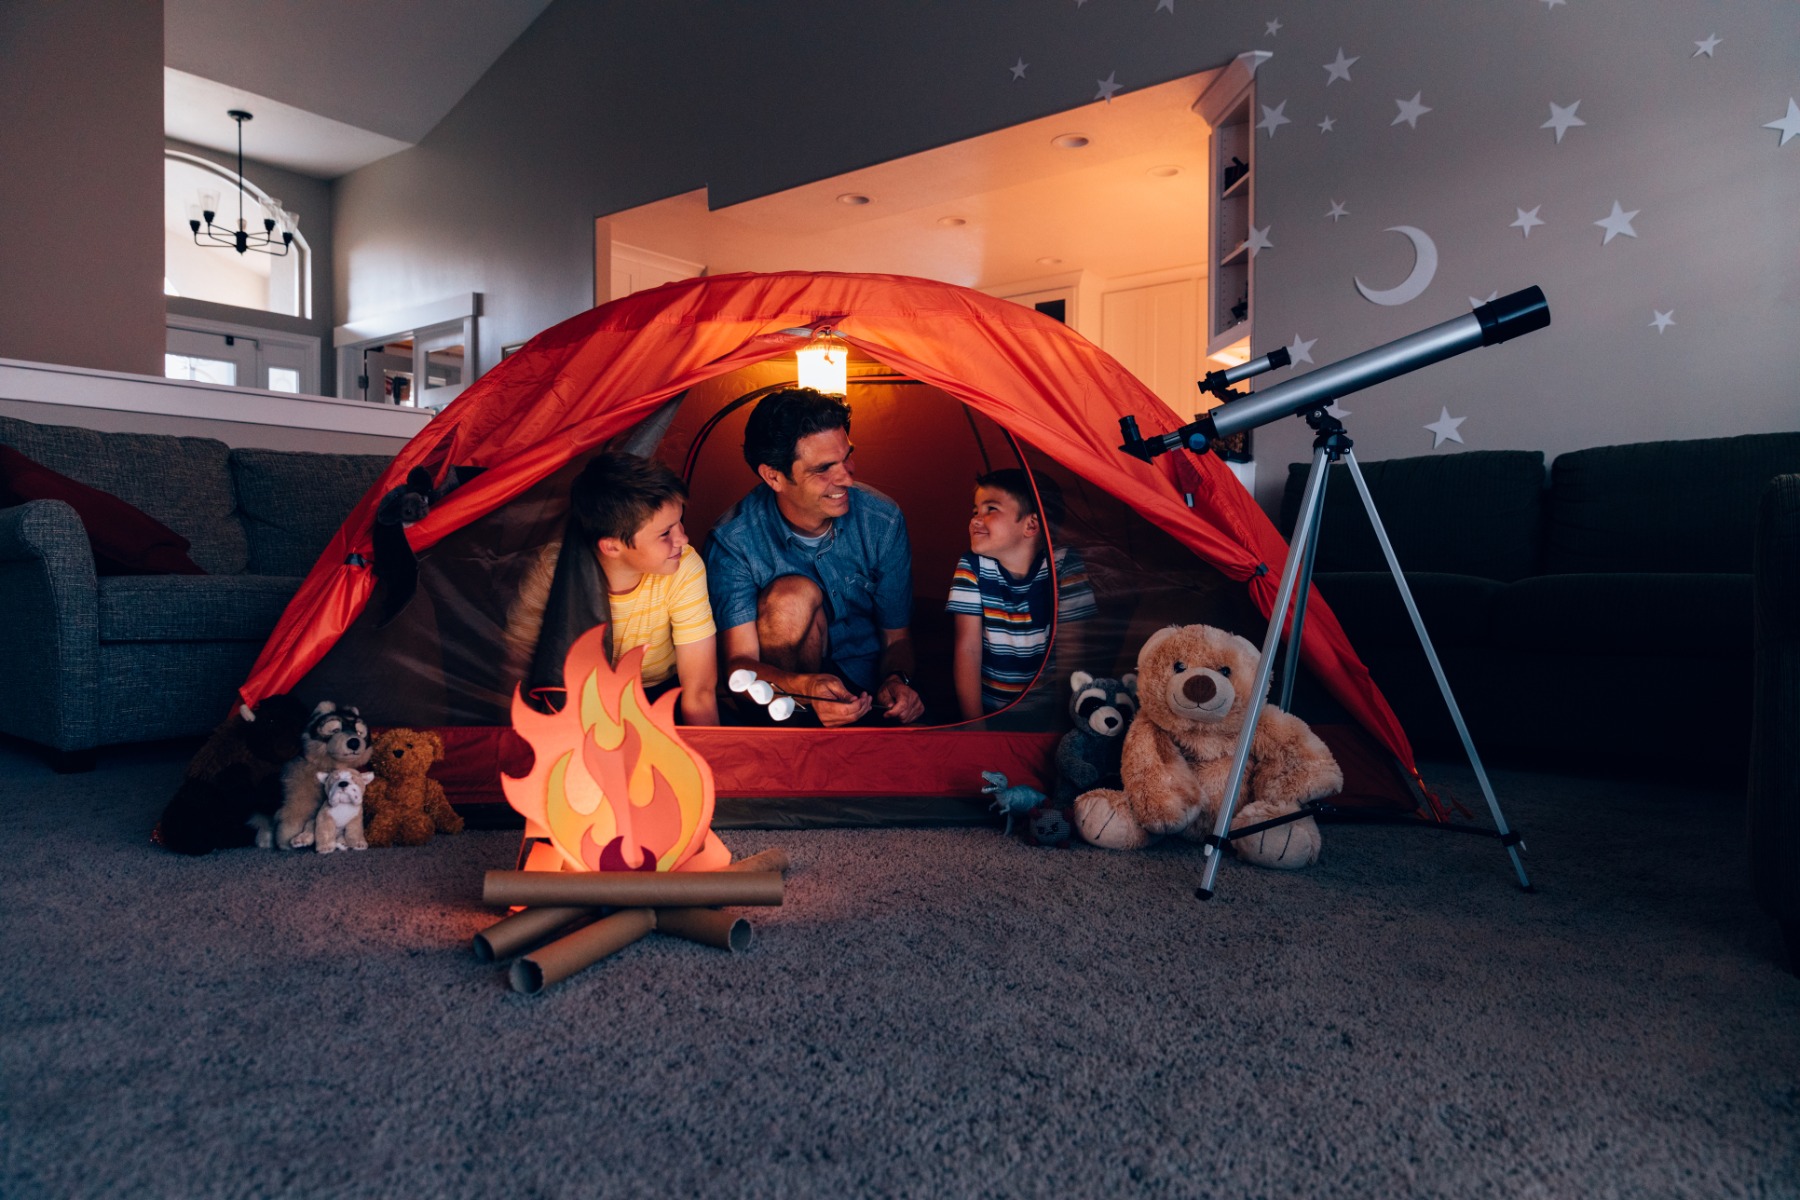 Un père joue avec ses deux fils dans le salon, sous une tente rouge et un feu de camp en carton.